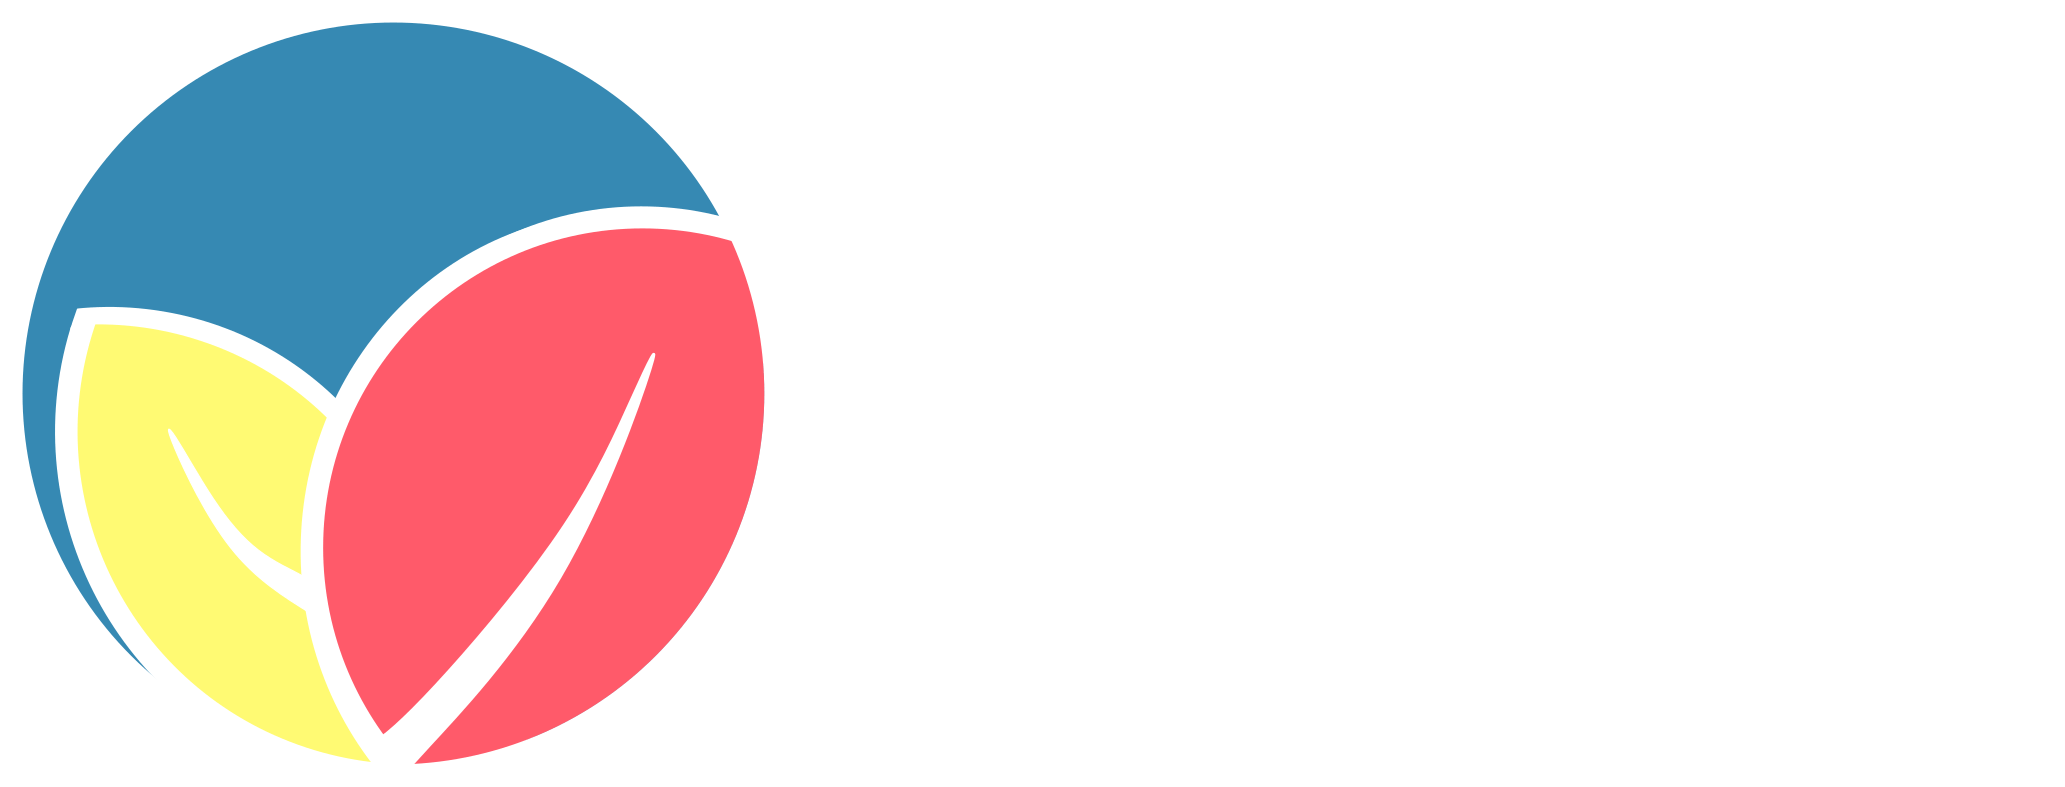 Augsburger Frühlingsbouldern Logo